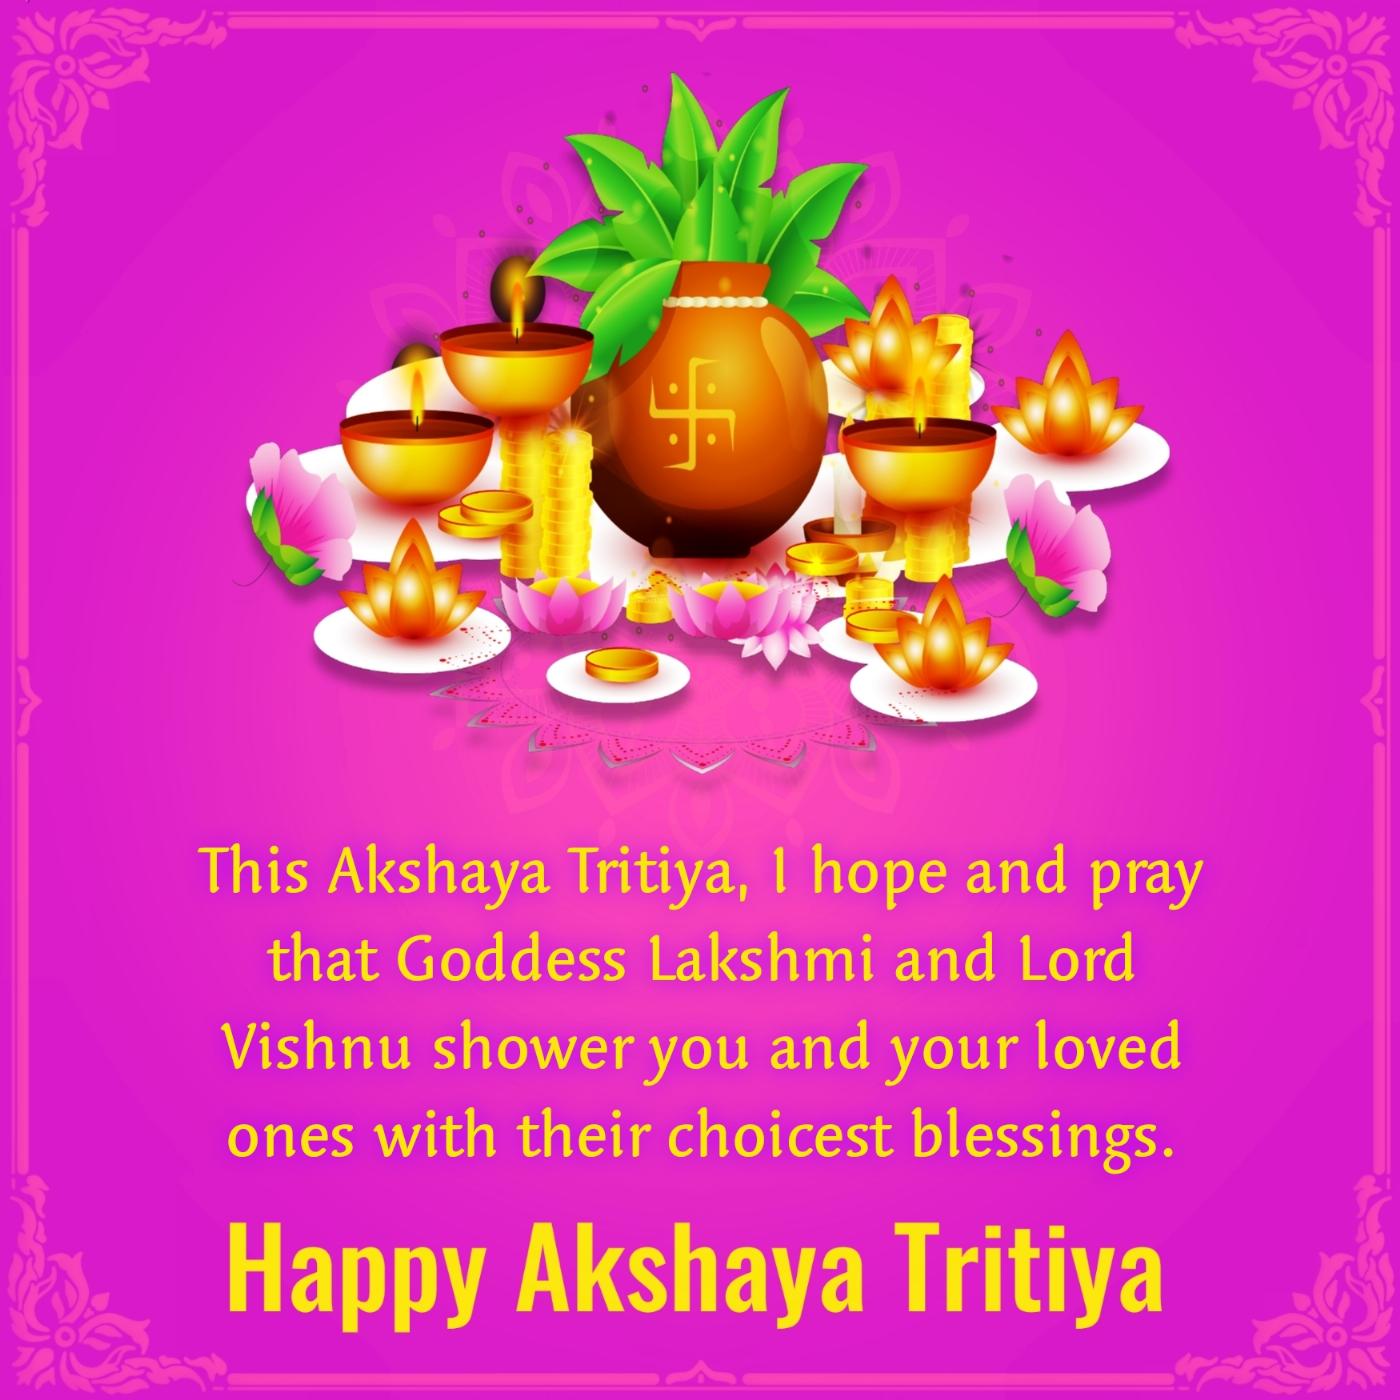 This Akshaya Tritiya I hope and pray that Goddess Lakshmi